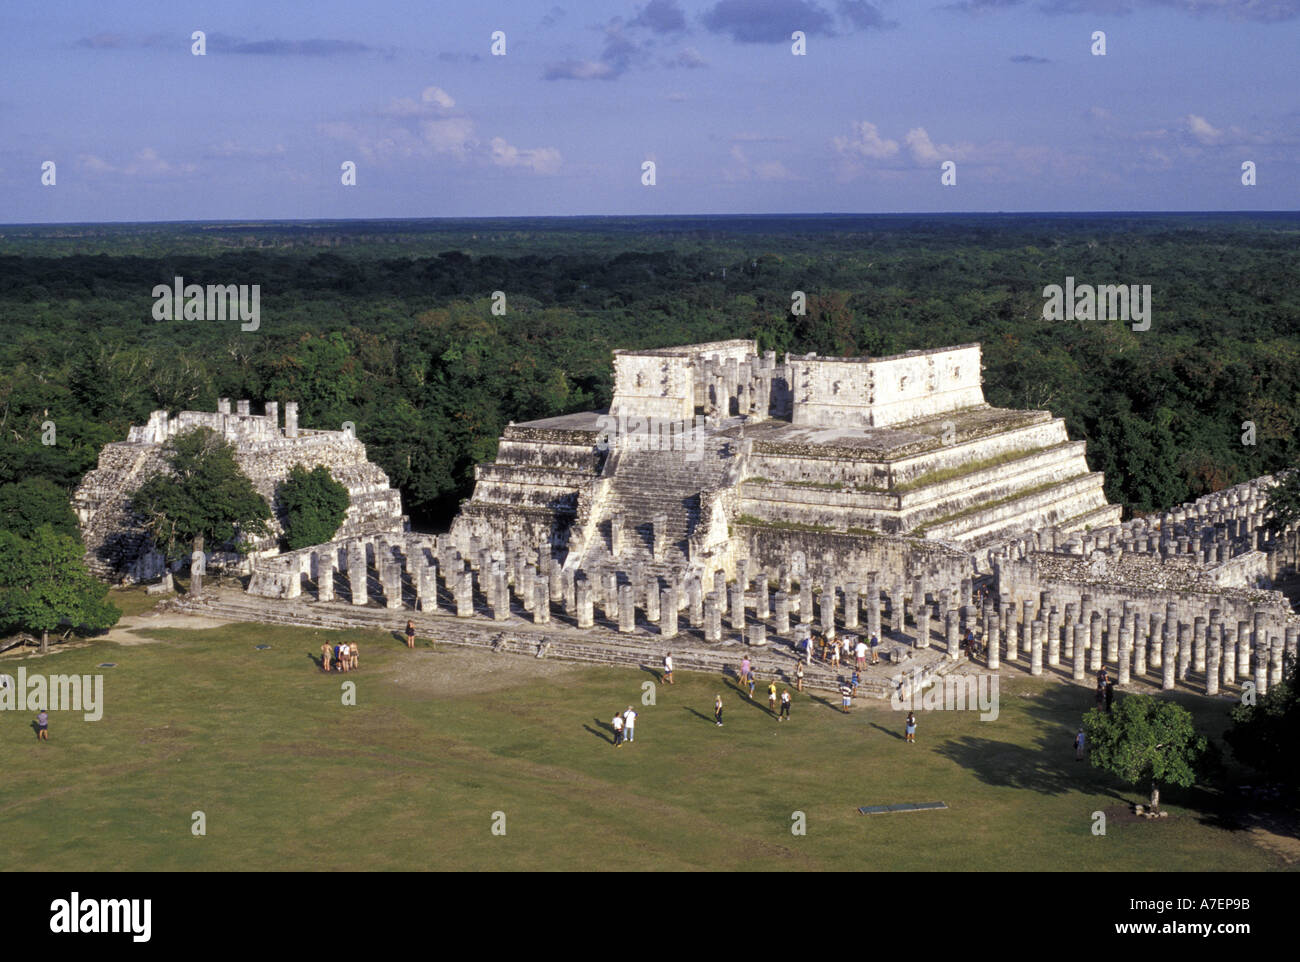 Mexico, Yucatan. Temple of Columns; Chichen Itza ruins, Maya Civilization, 7th-13th Century. Stock Photo